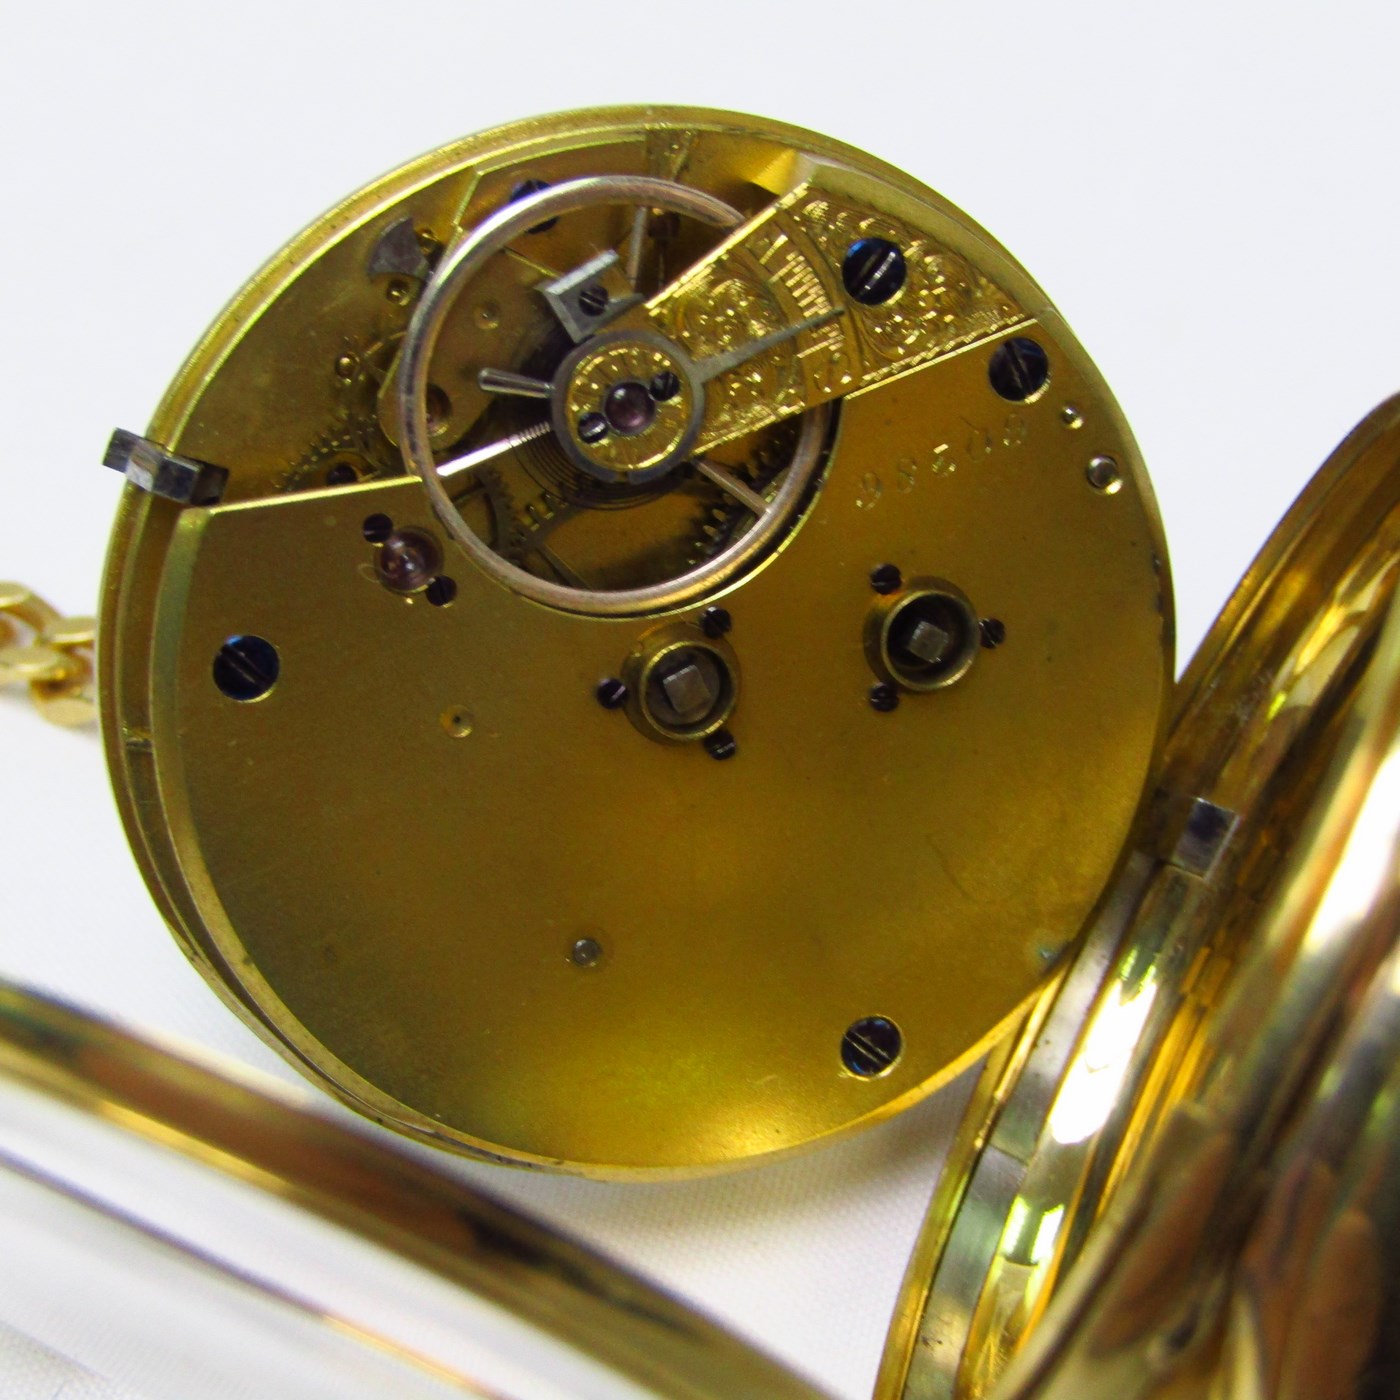 Fabricación Inglesa. Reloj de Bolsillo para caballero, lepine. Año 1869.